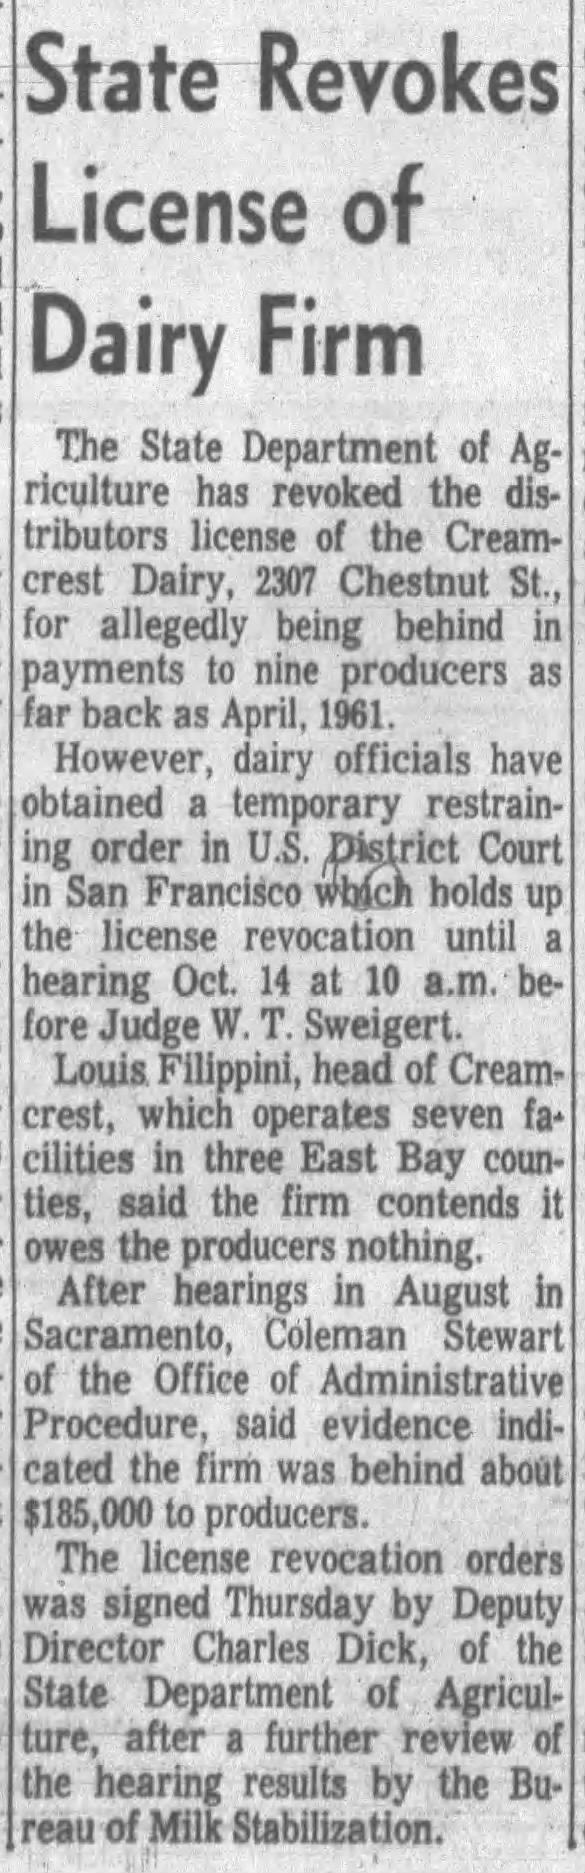 Creamcrest Dairy -- 2307 Chestnut
license revoked. Louis Filippini